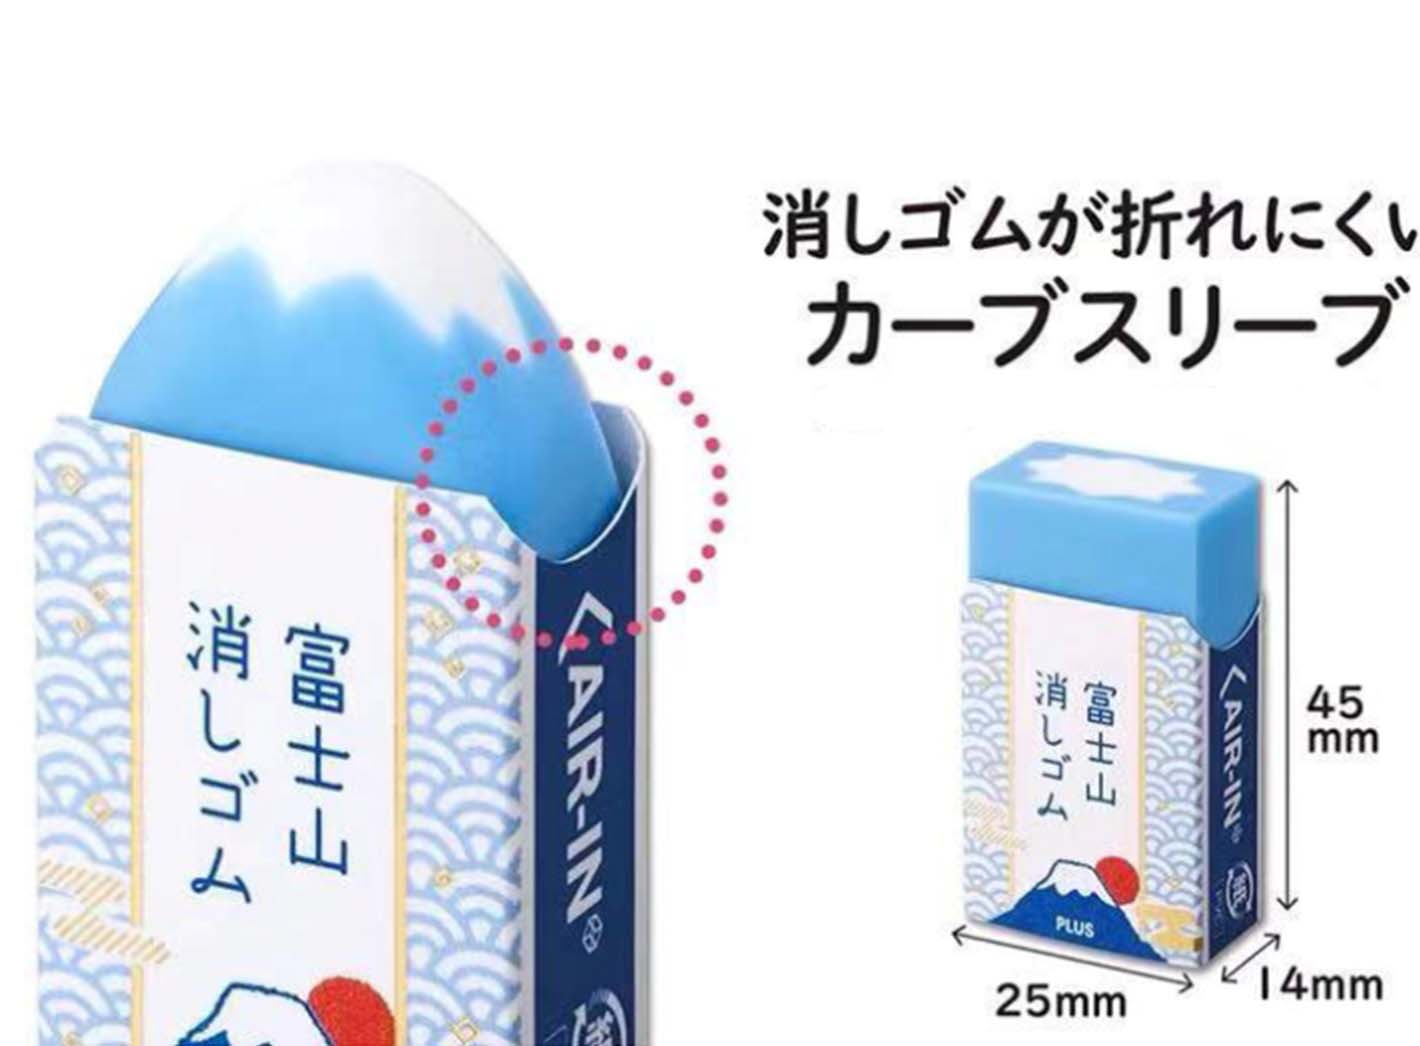 Mount Fuji eraser limited edition - Ureshii Shop 嬉來店